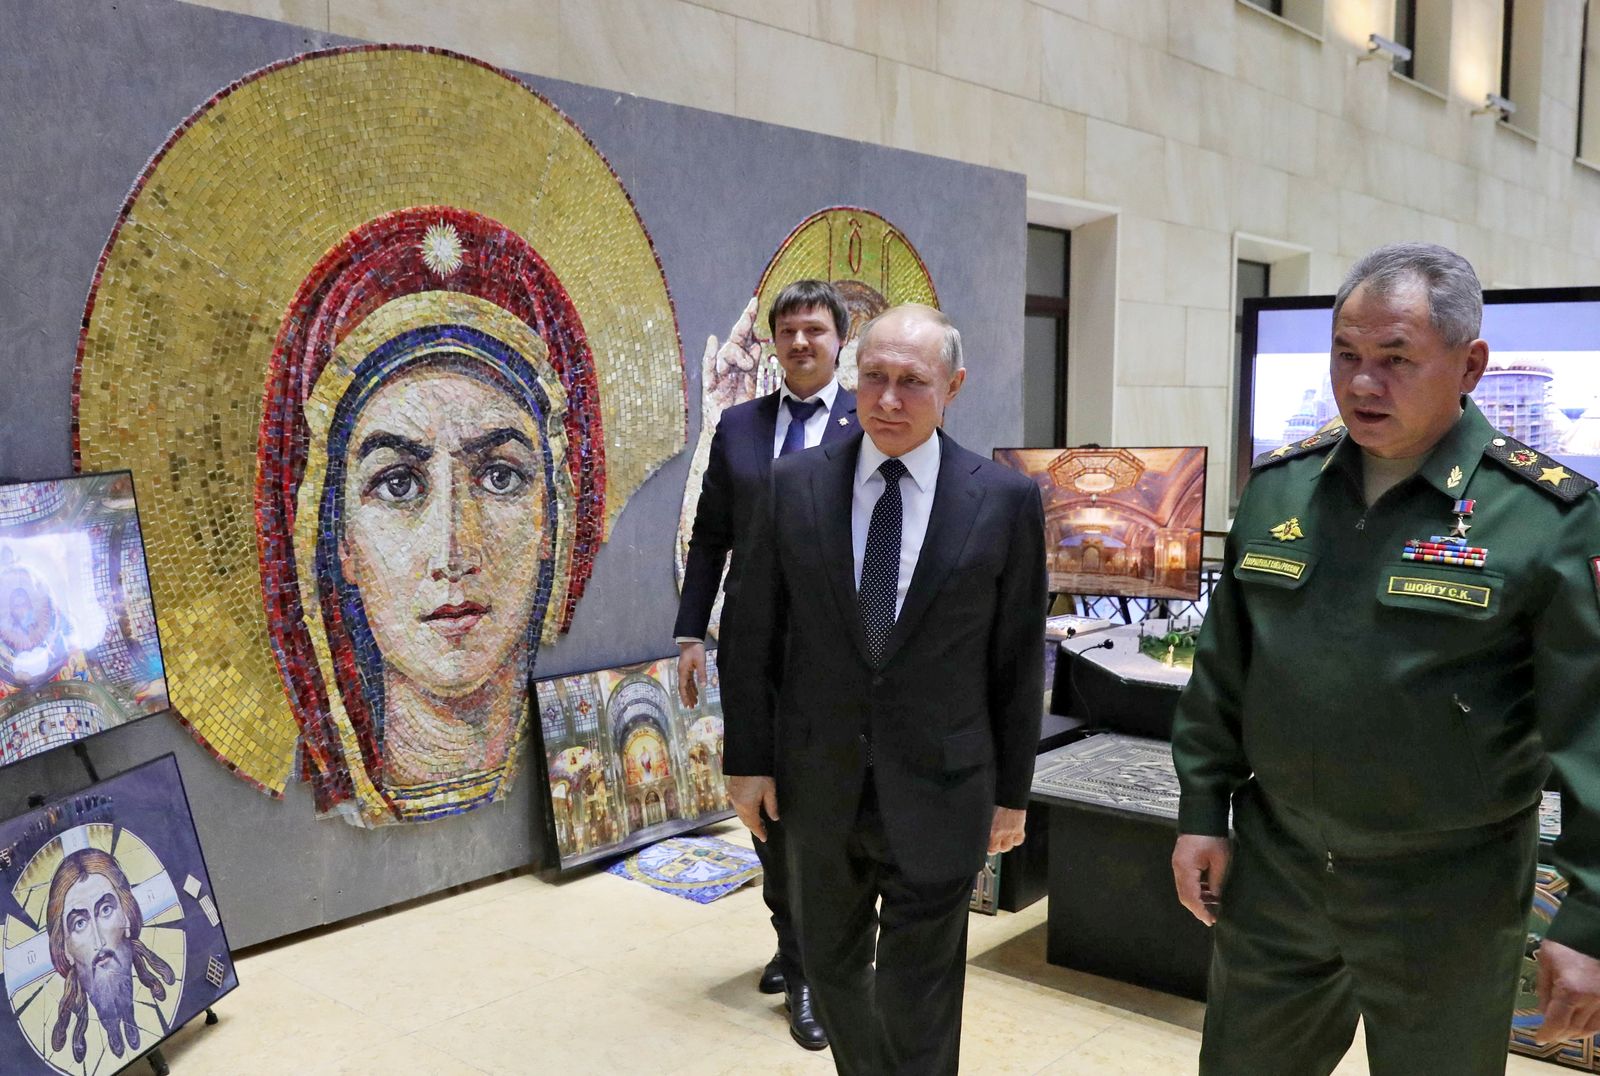 الرئيس الروسي فلاديمير بوتين ووزير الدفاع سيرجي شويجو يحضران معرضاً عسكرياً في موسكو. ديسمبر 2019 - REUTERS